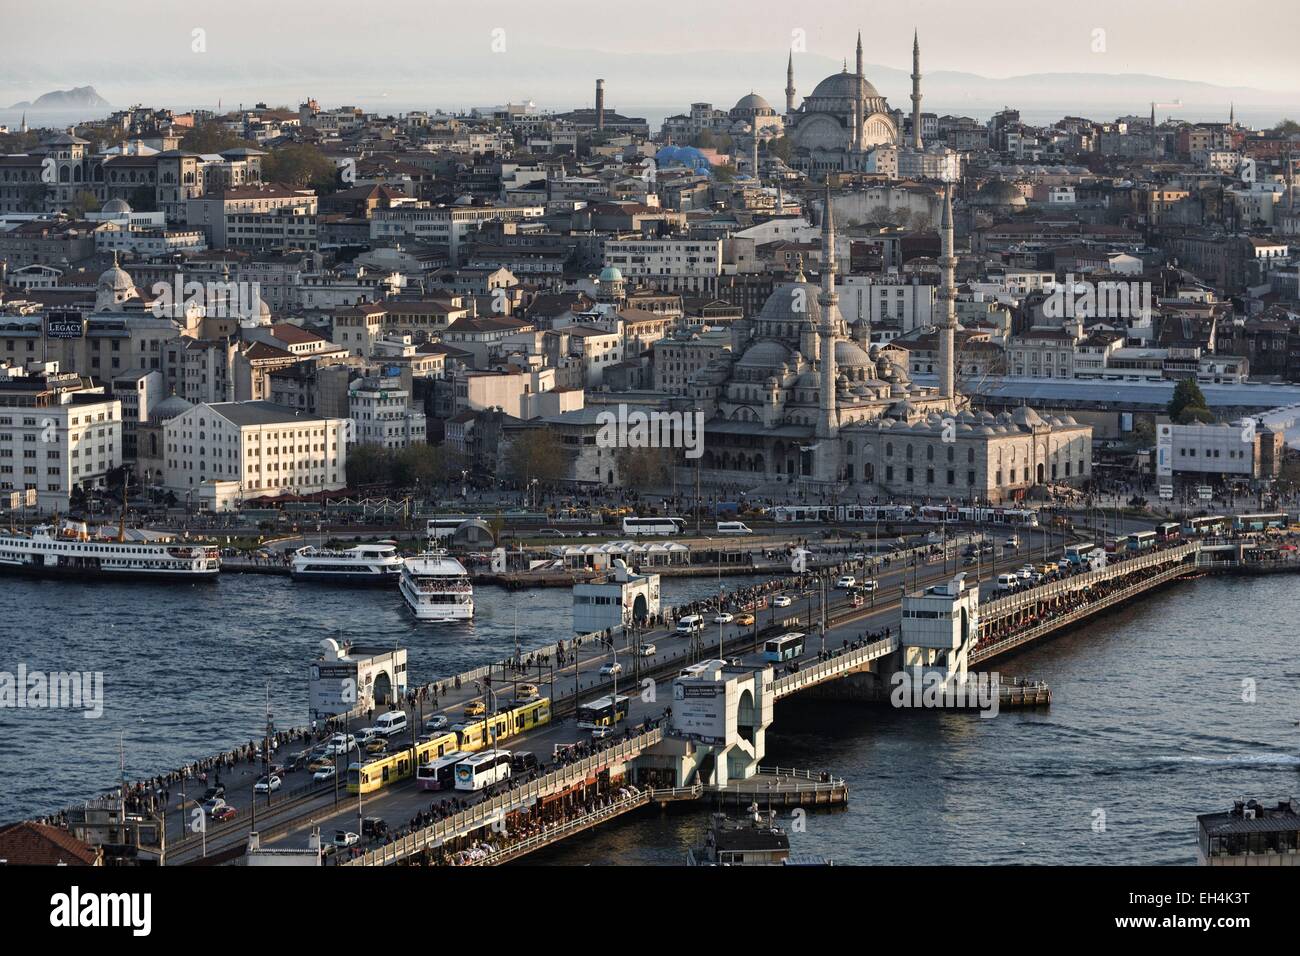 Turquía, Estambul, centro histórico catalogado como Patrimonio Mundial por la UNESCO, el Puente de Galata sobre el cuerno de oro, frente al Estrecho Yeni Cami (Mezquita nueva) y la mezquita de Nuruosmaniye en el fondo Foto de stock